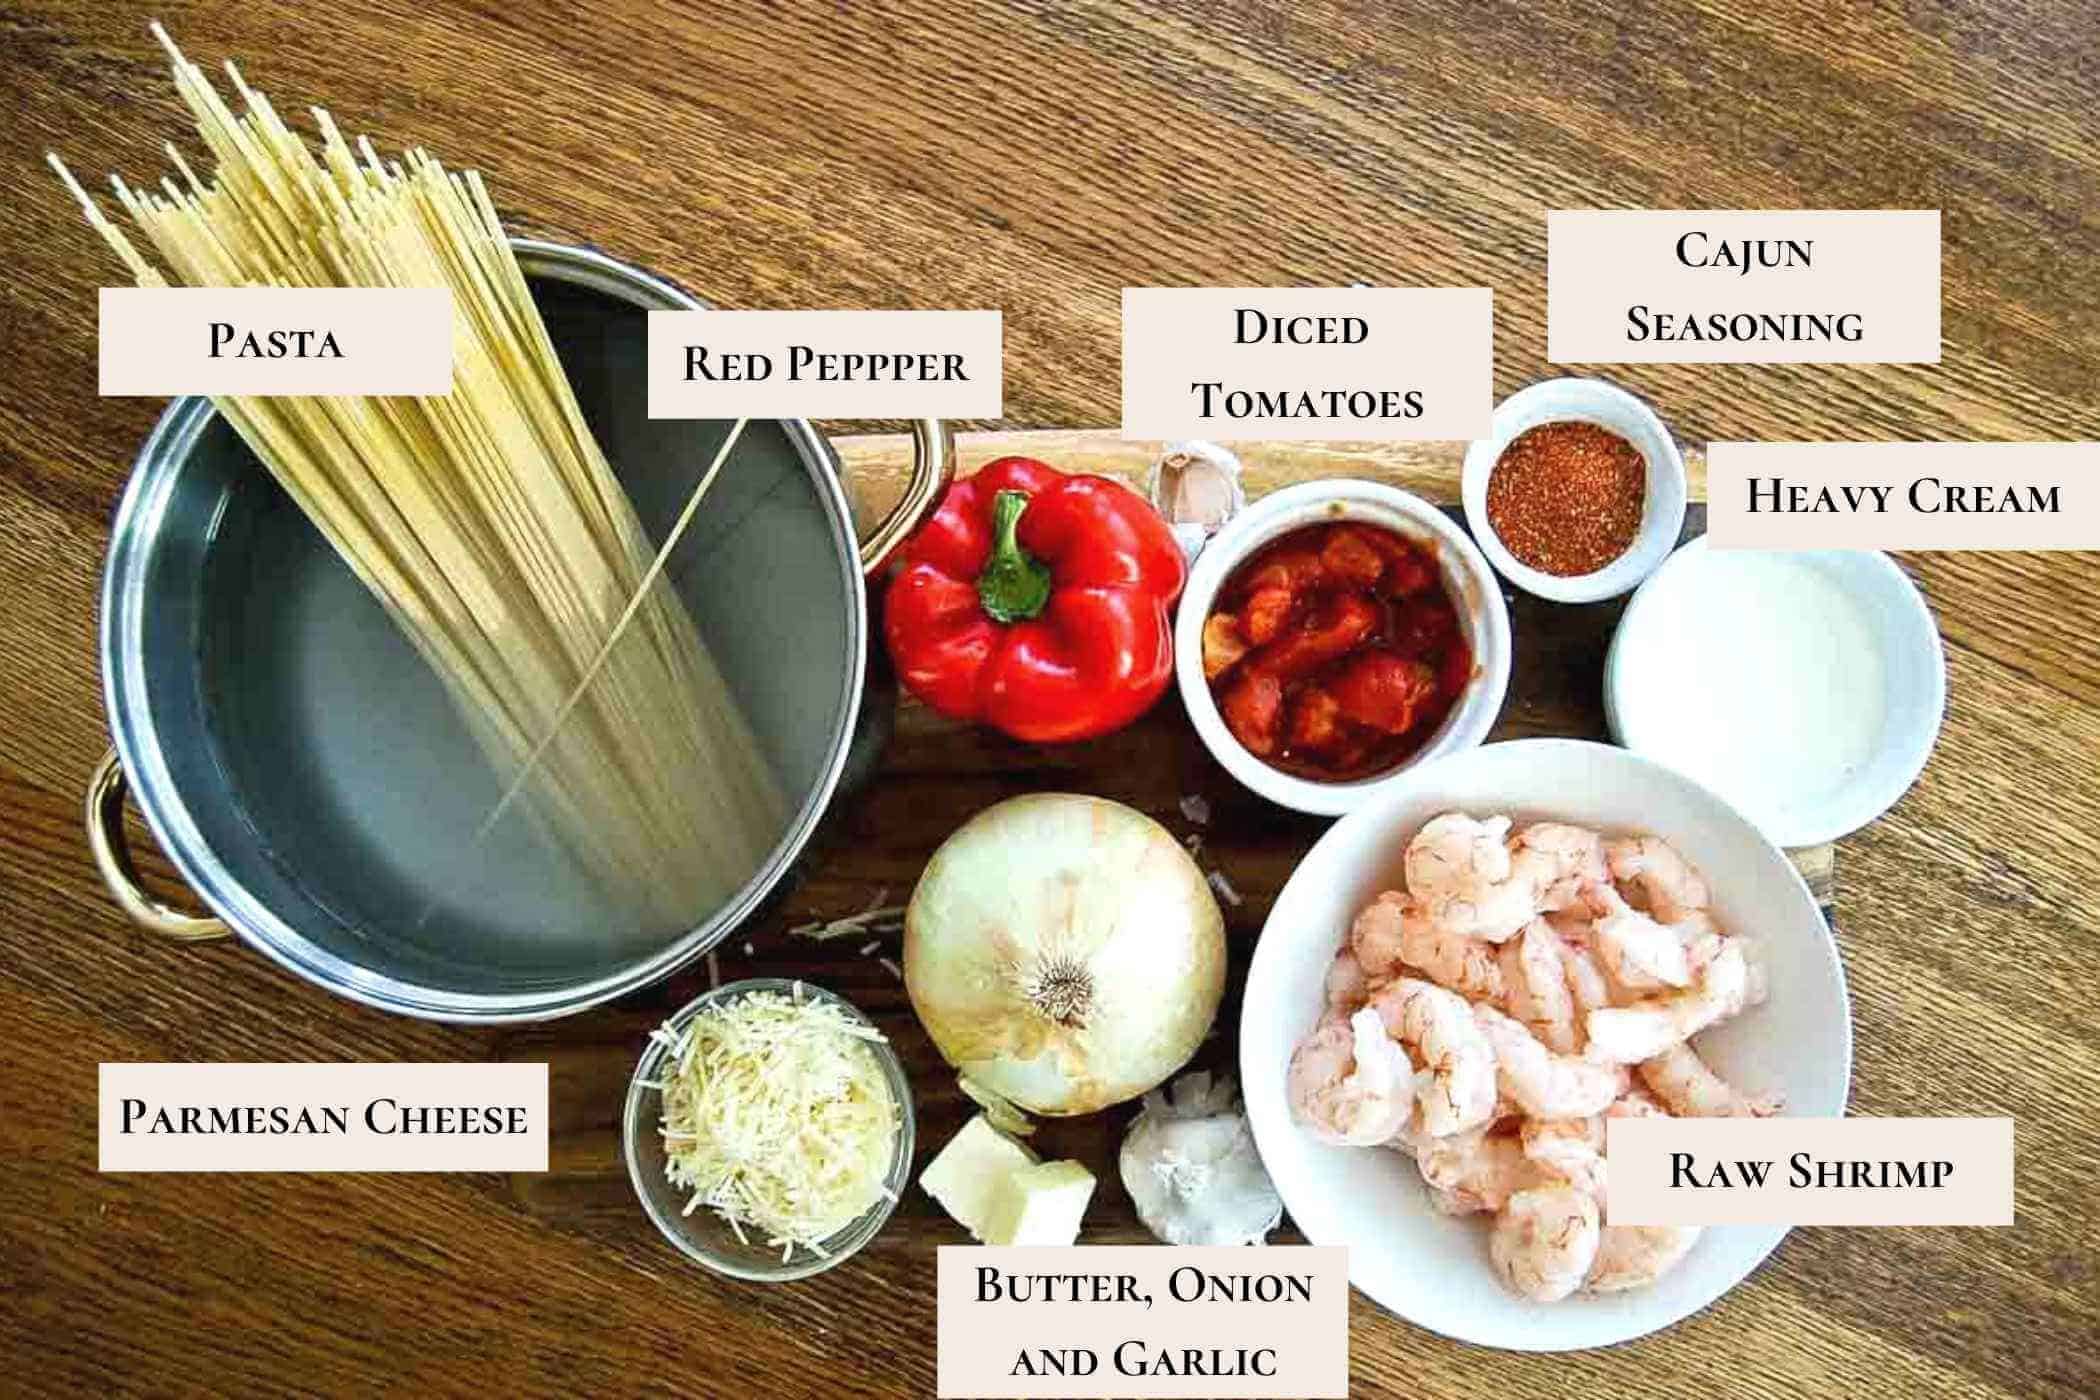 cajun shrimp pasta ingredients.